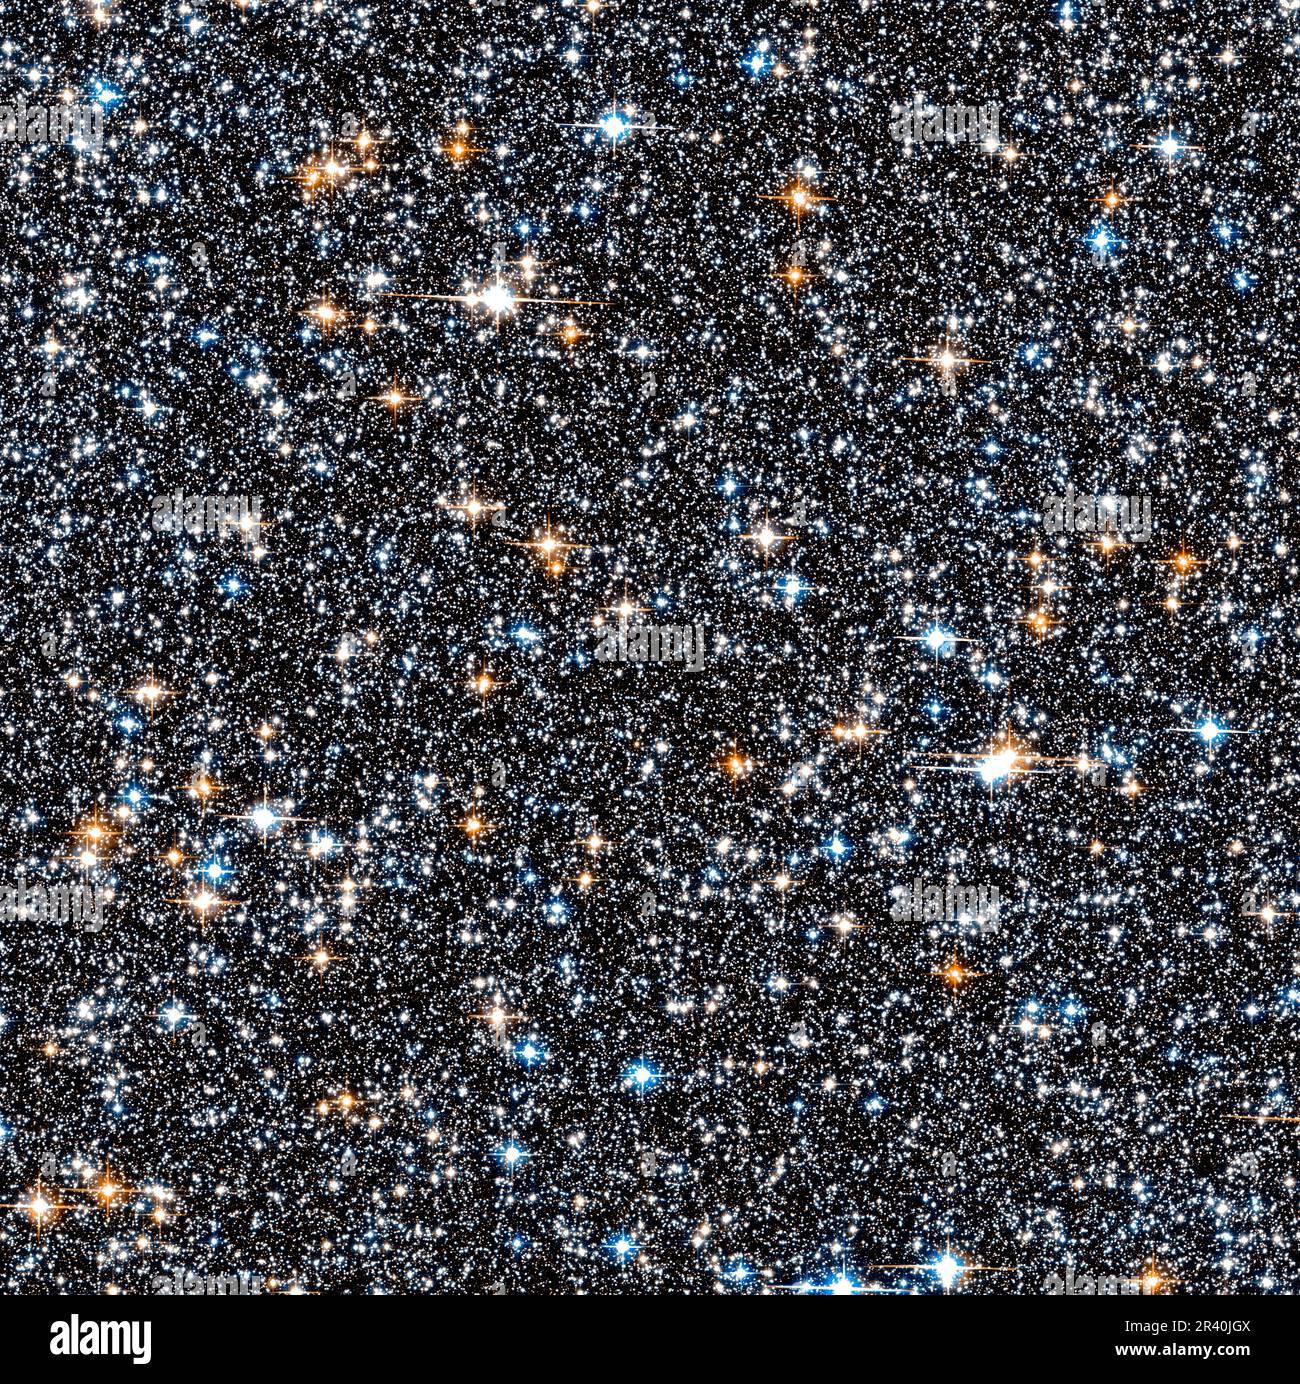 Pequeña sección de la densa colección de estrellas se apiñó en el bulto galáctico de la Vía Láctea. Foto de stock